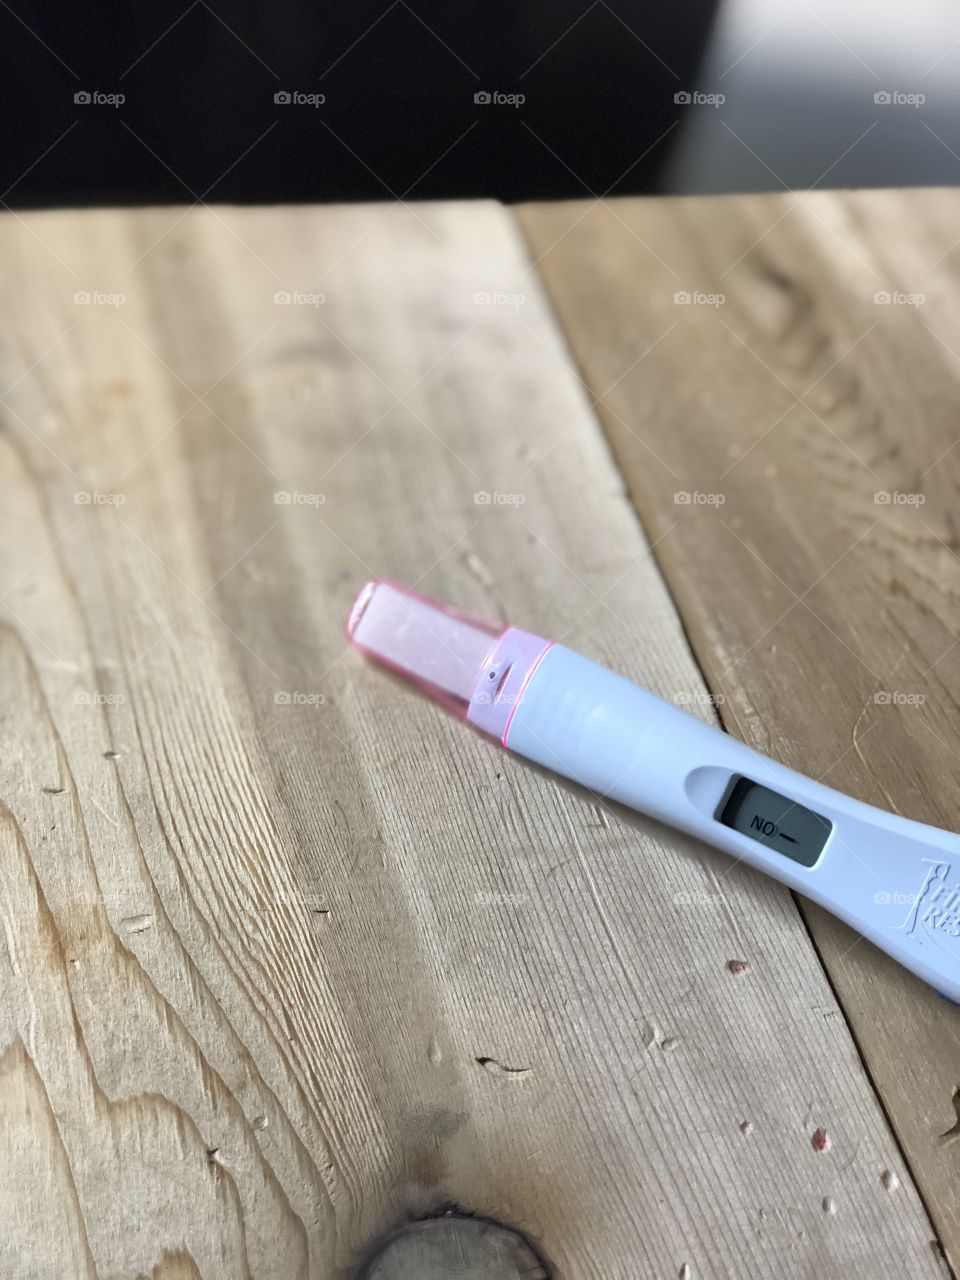 Negative pregnancy test result